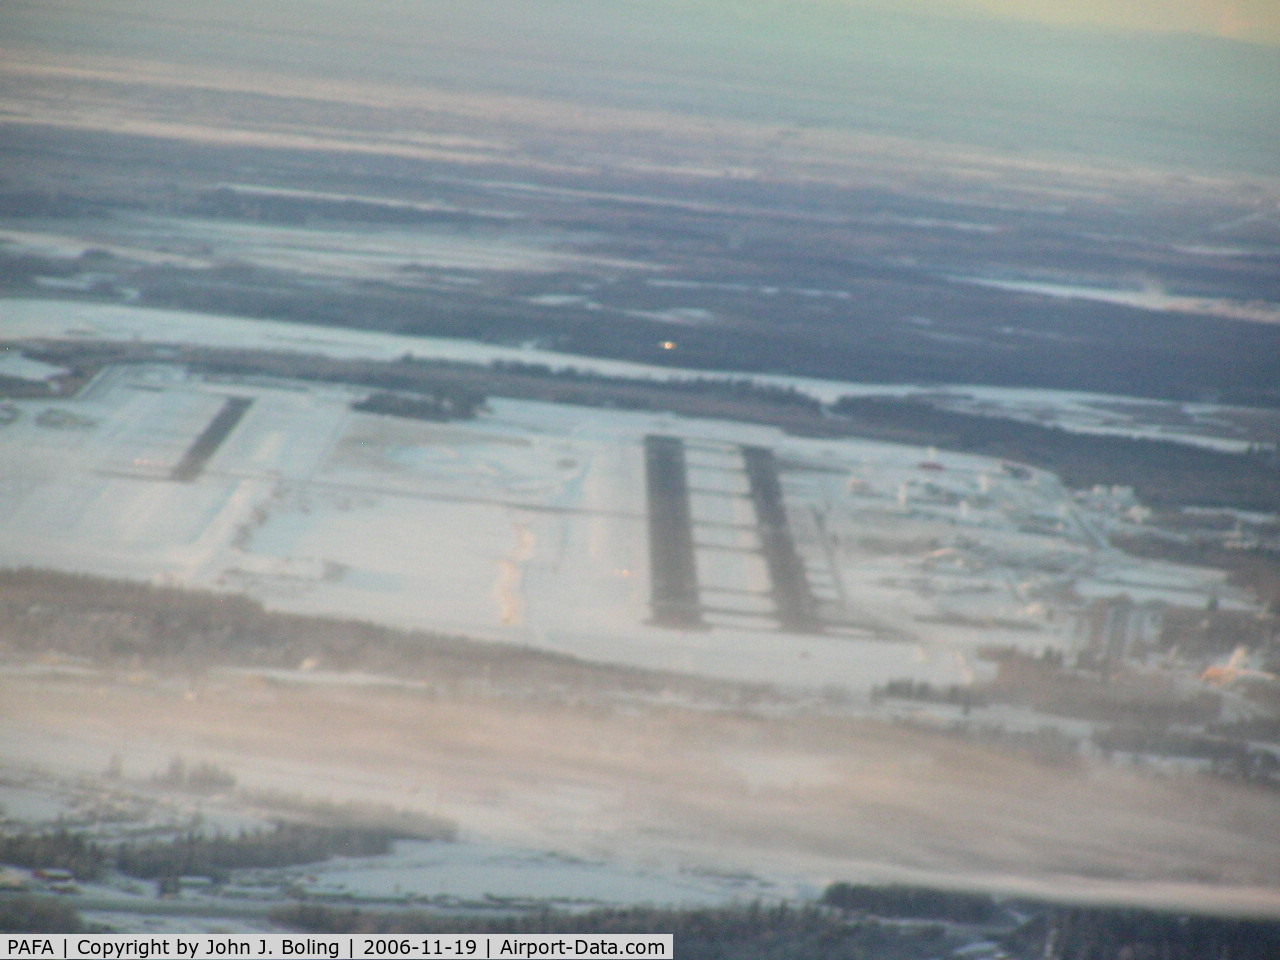 Fairbanks International Airport, Fairbanks, Alaska United States (PAFA) - Turning final for runway 19R at Fairbanks, Alaska